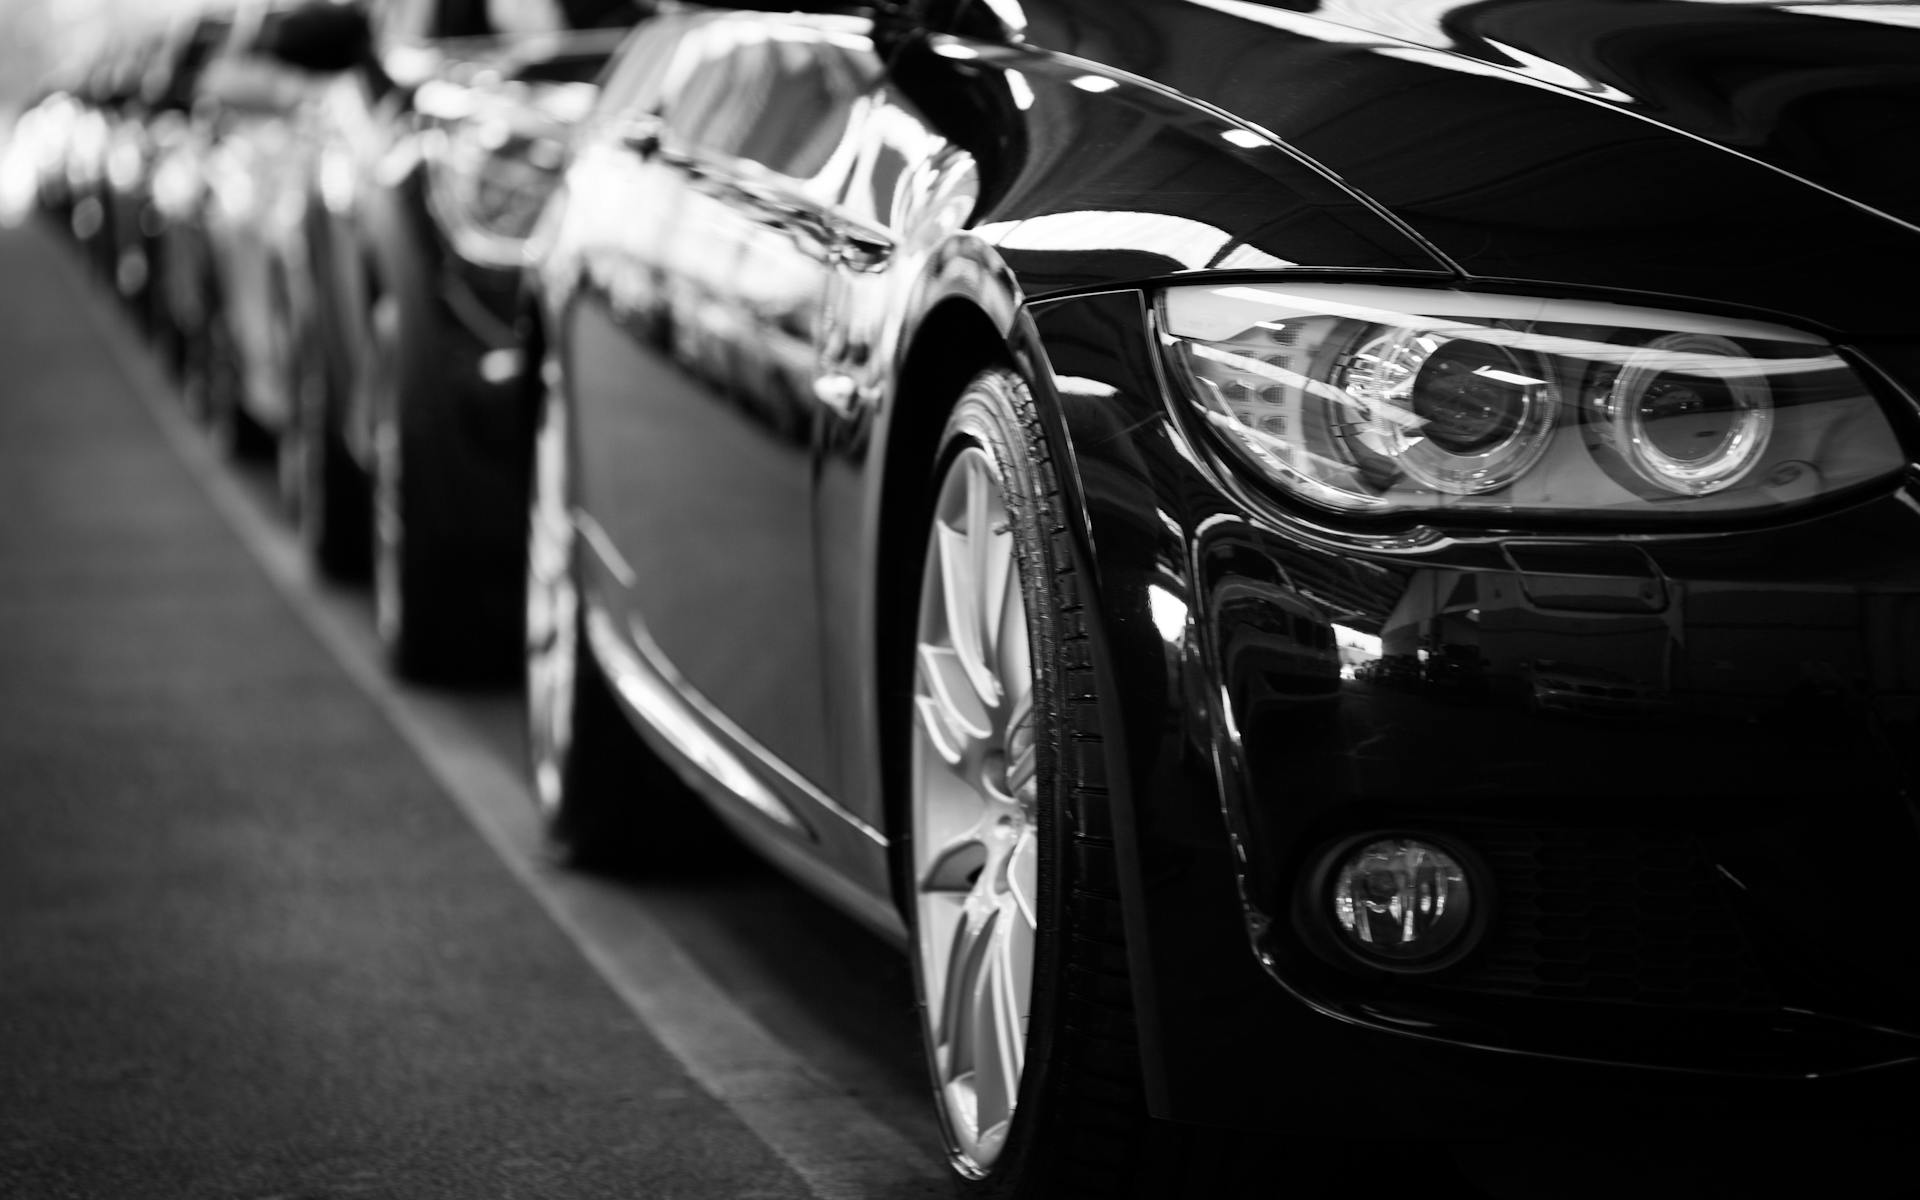 Imagem de uma fila de carros sedans pretos com reflexos da
          iluminação natural, todos desligados e alinhados a uma faixa branca
          no chão.